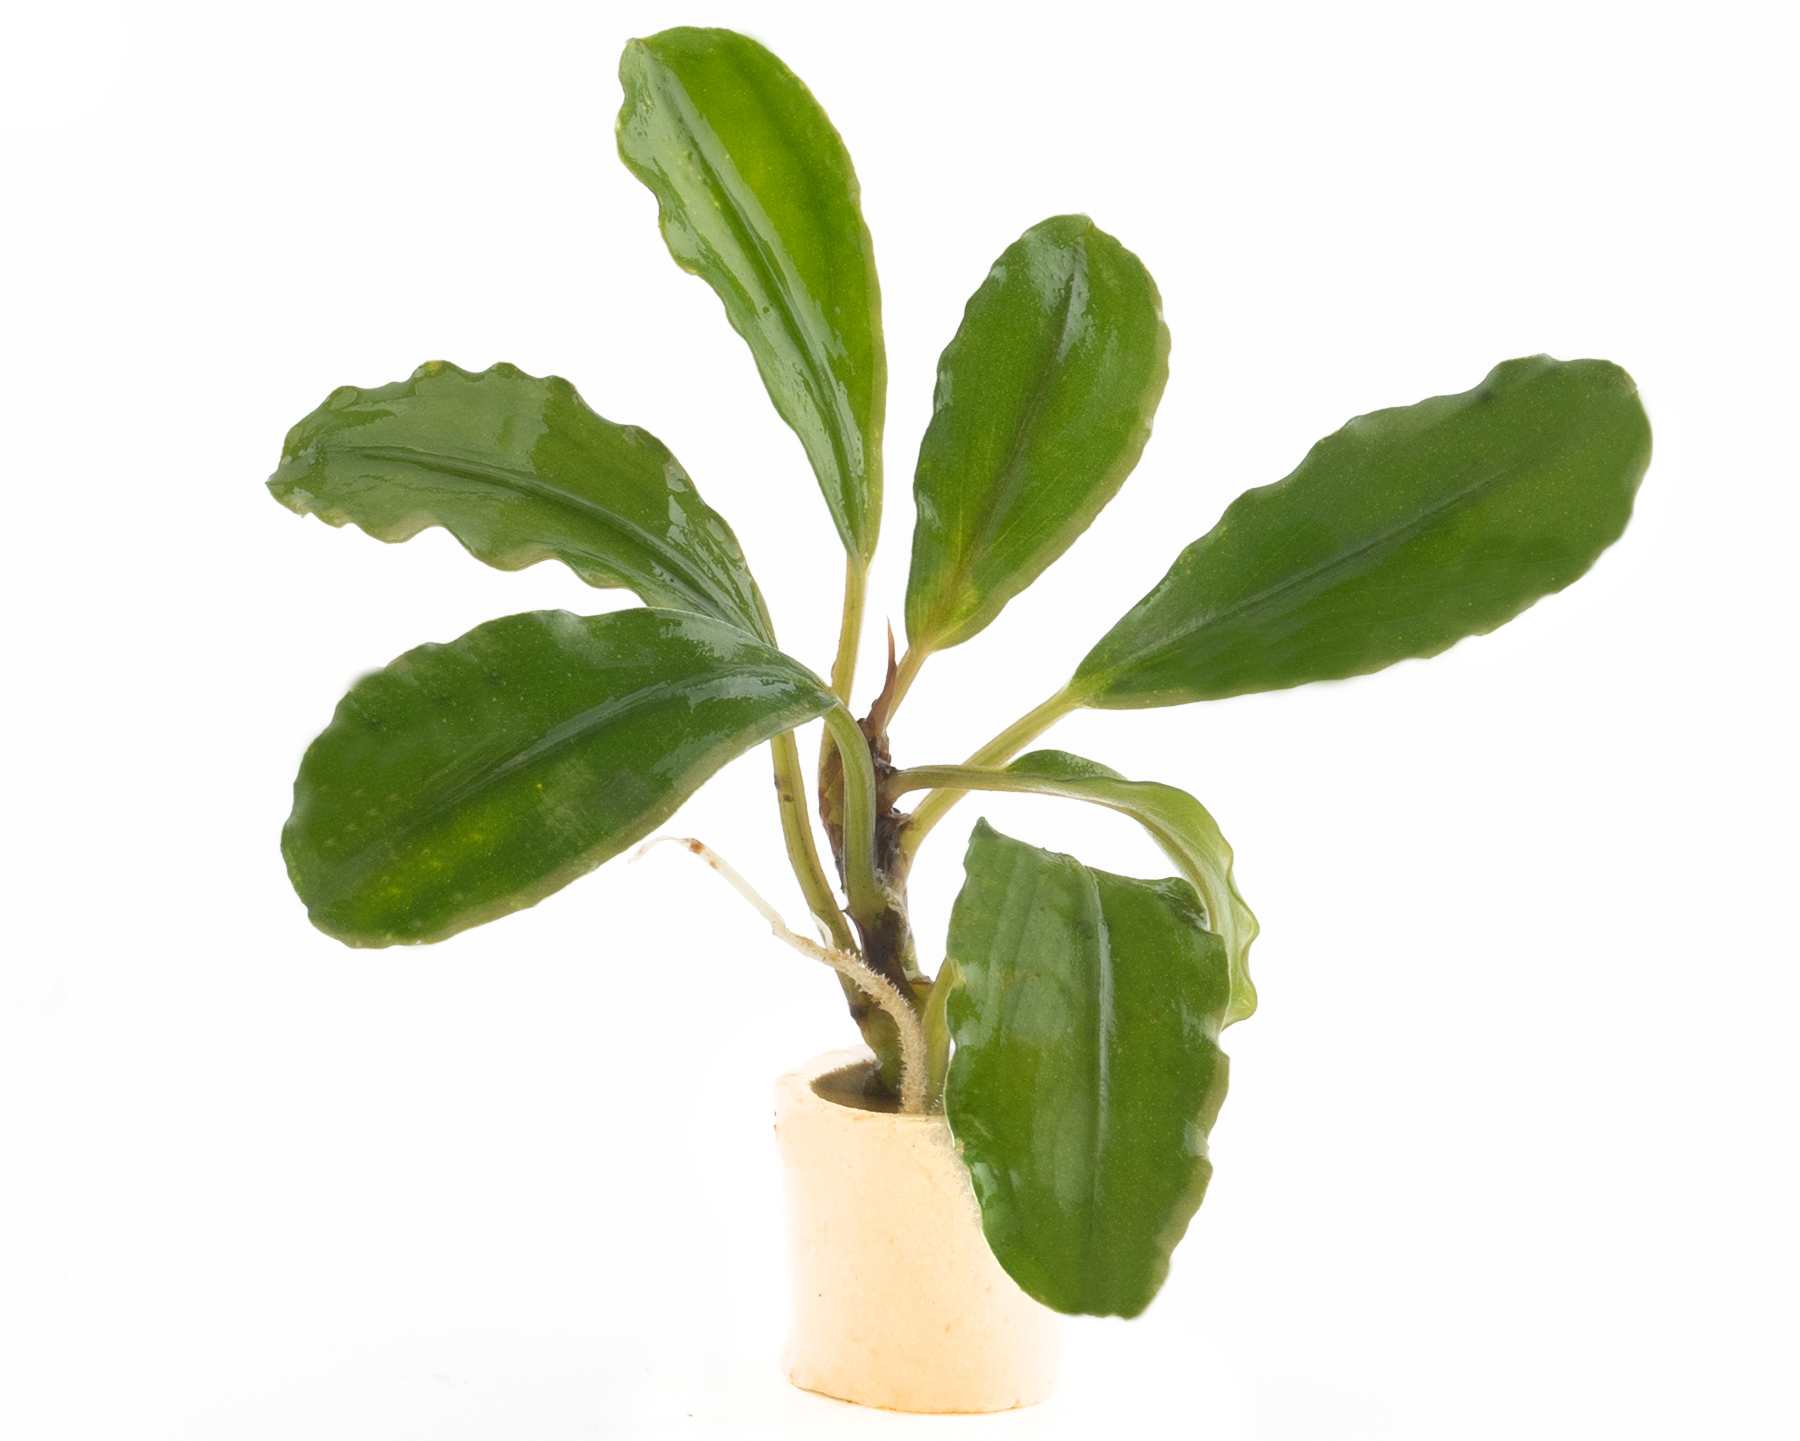 bucephalandra spec. "shiny green" - rarity nano perching plant